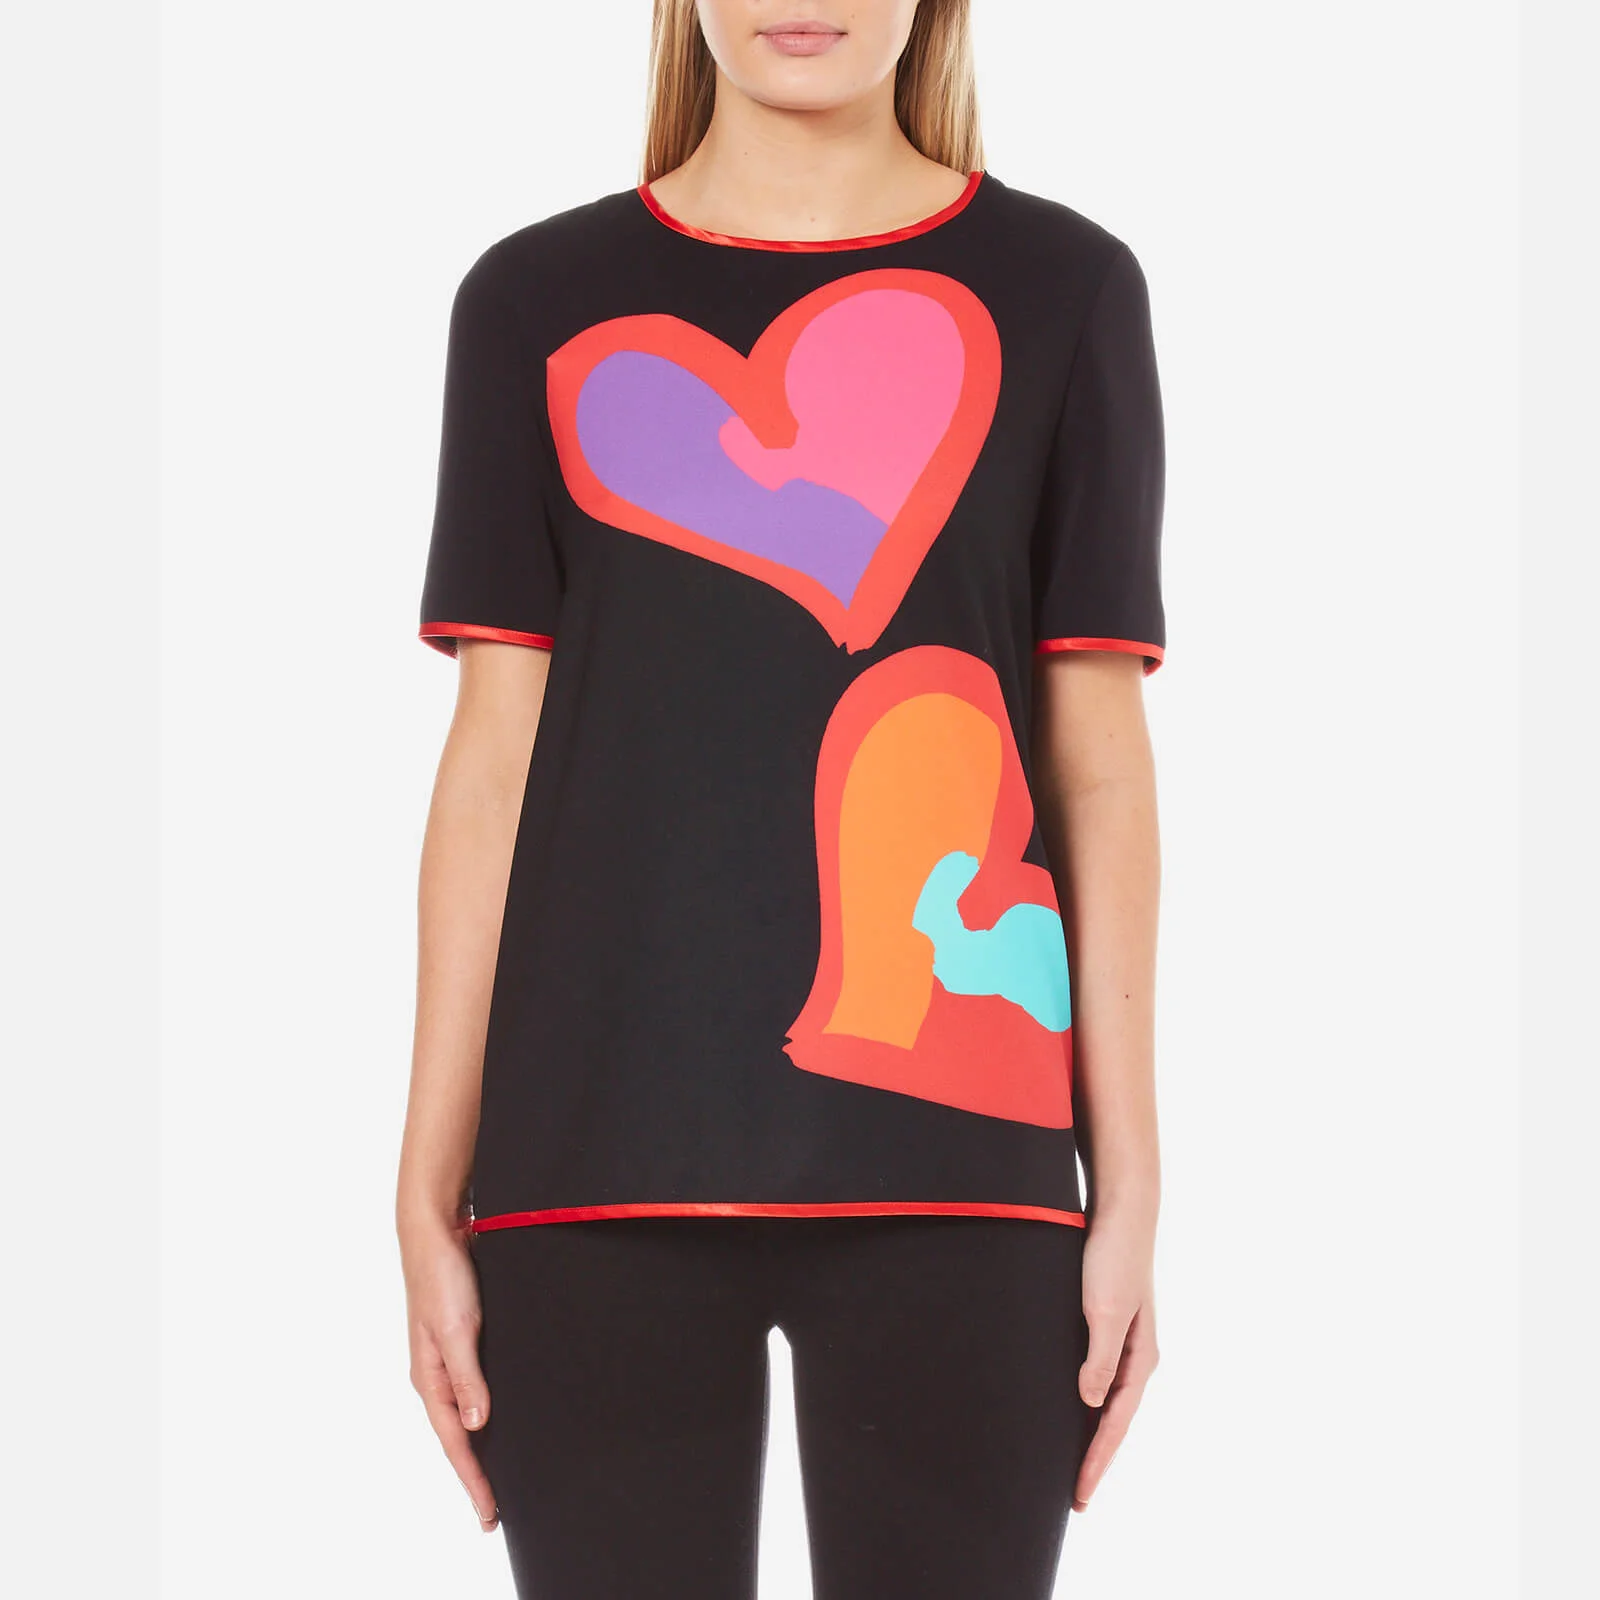 Boutique Moschino Women's Big Heart T-Shirt - Black Image 1